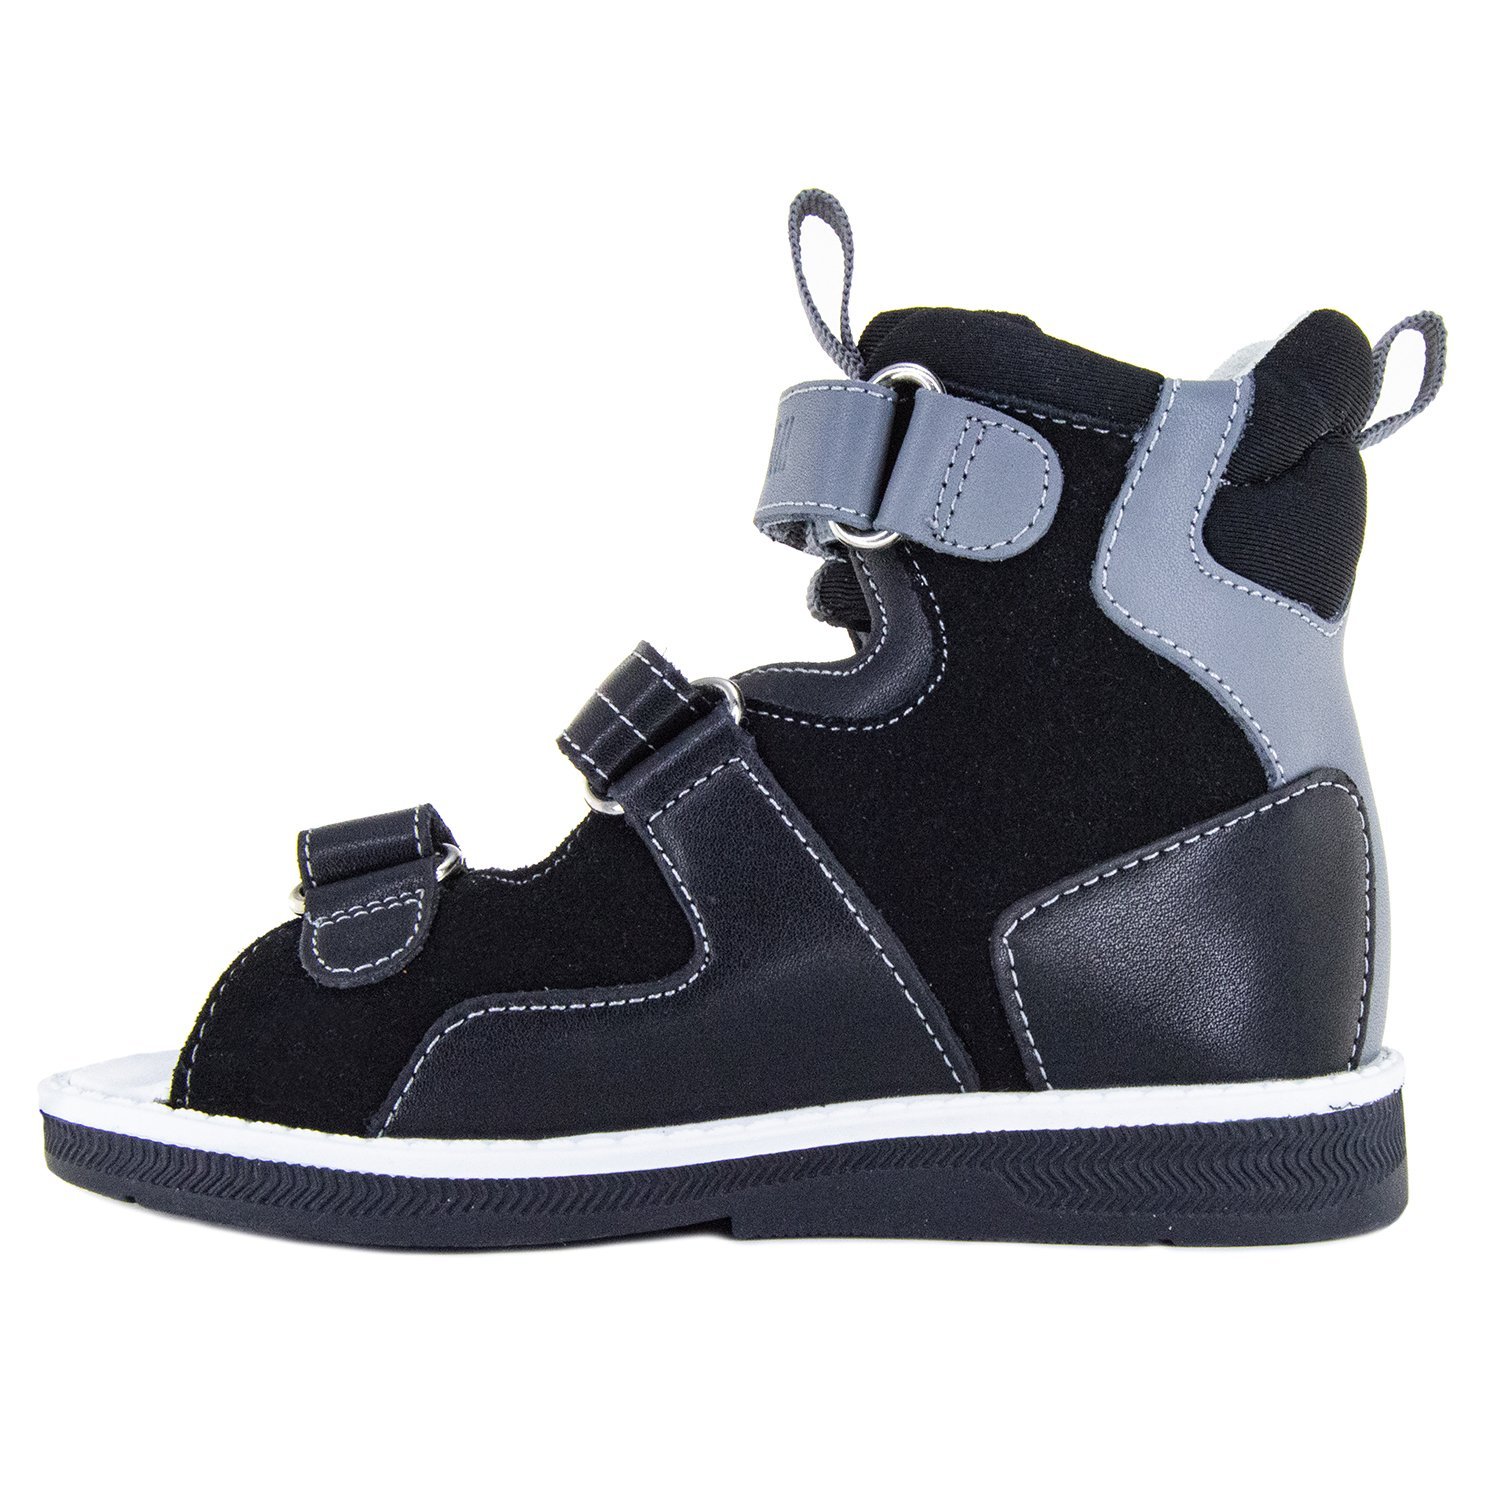 Детские сандалии ORTHOBOOM 71057-03 ярко-черный с серым